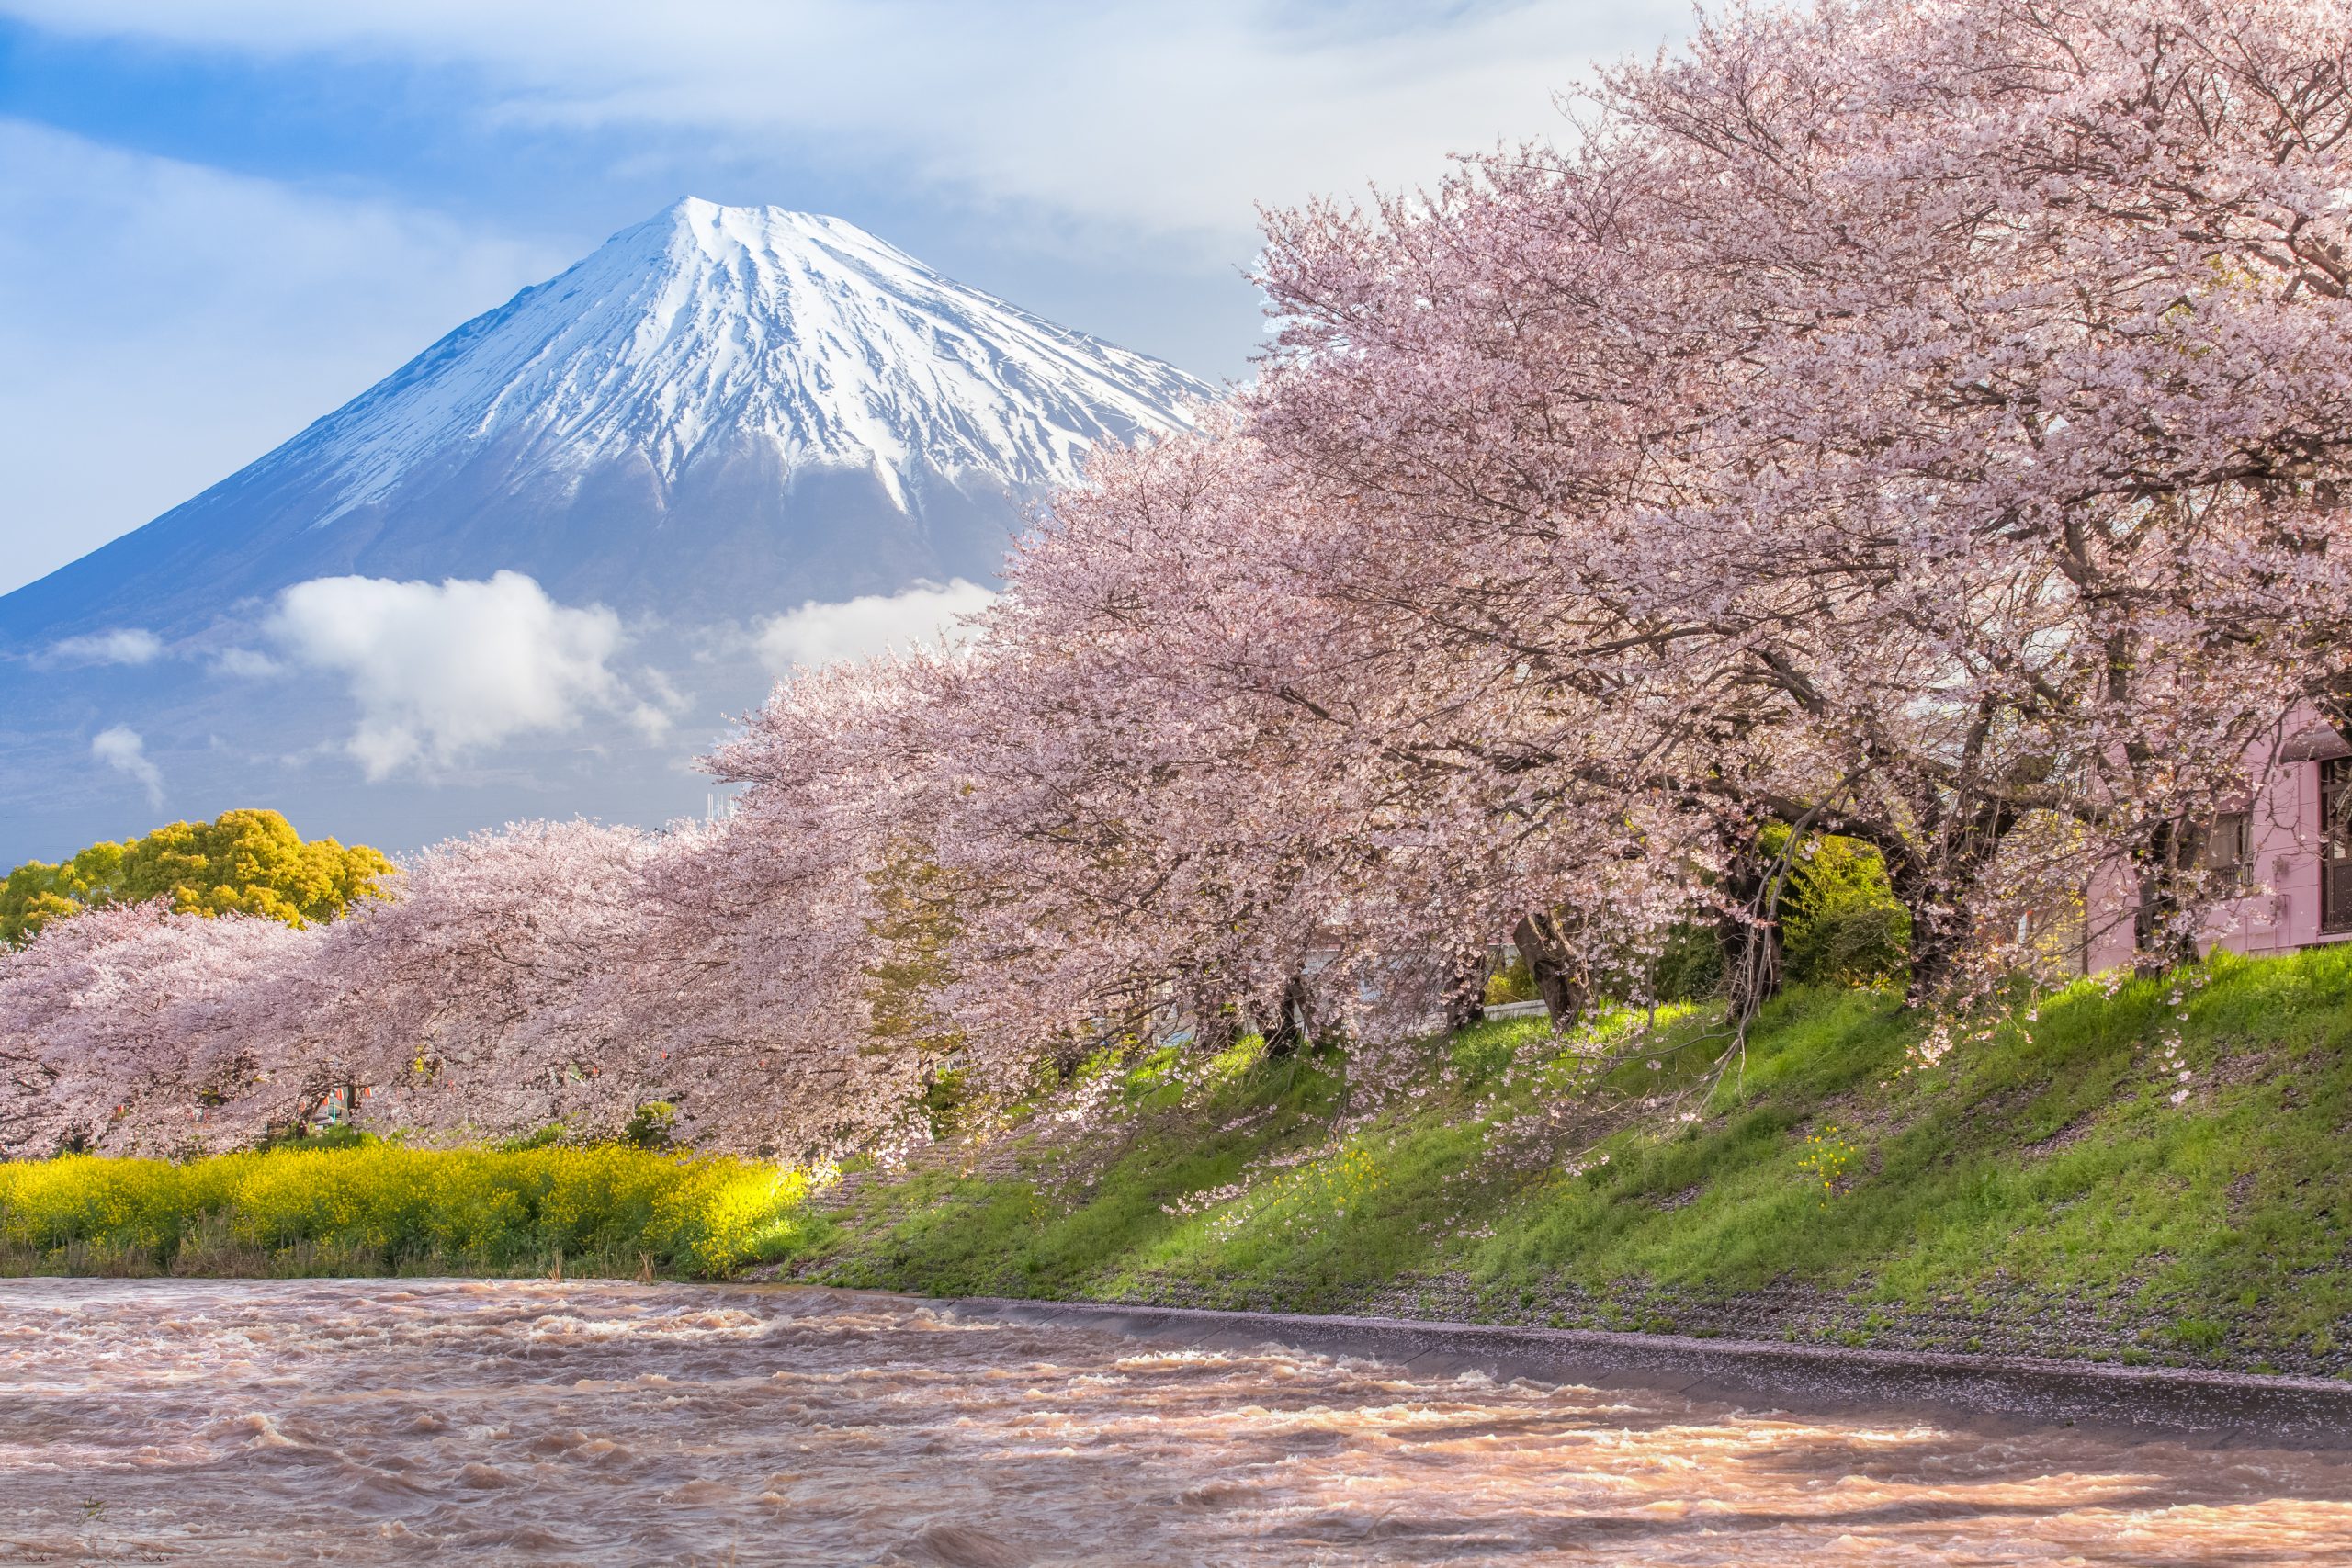 Hero-Beautiful-Mountain-Fuji-and-sakura-cherry-blossom-iStock-831249614.jpg